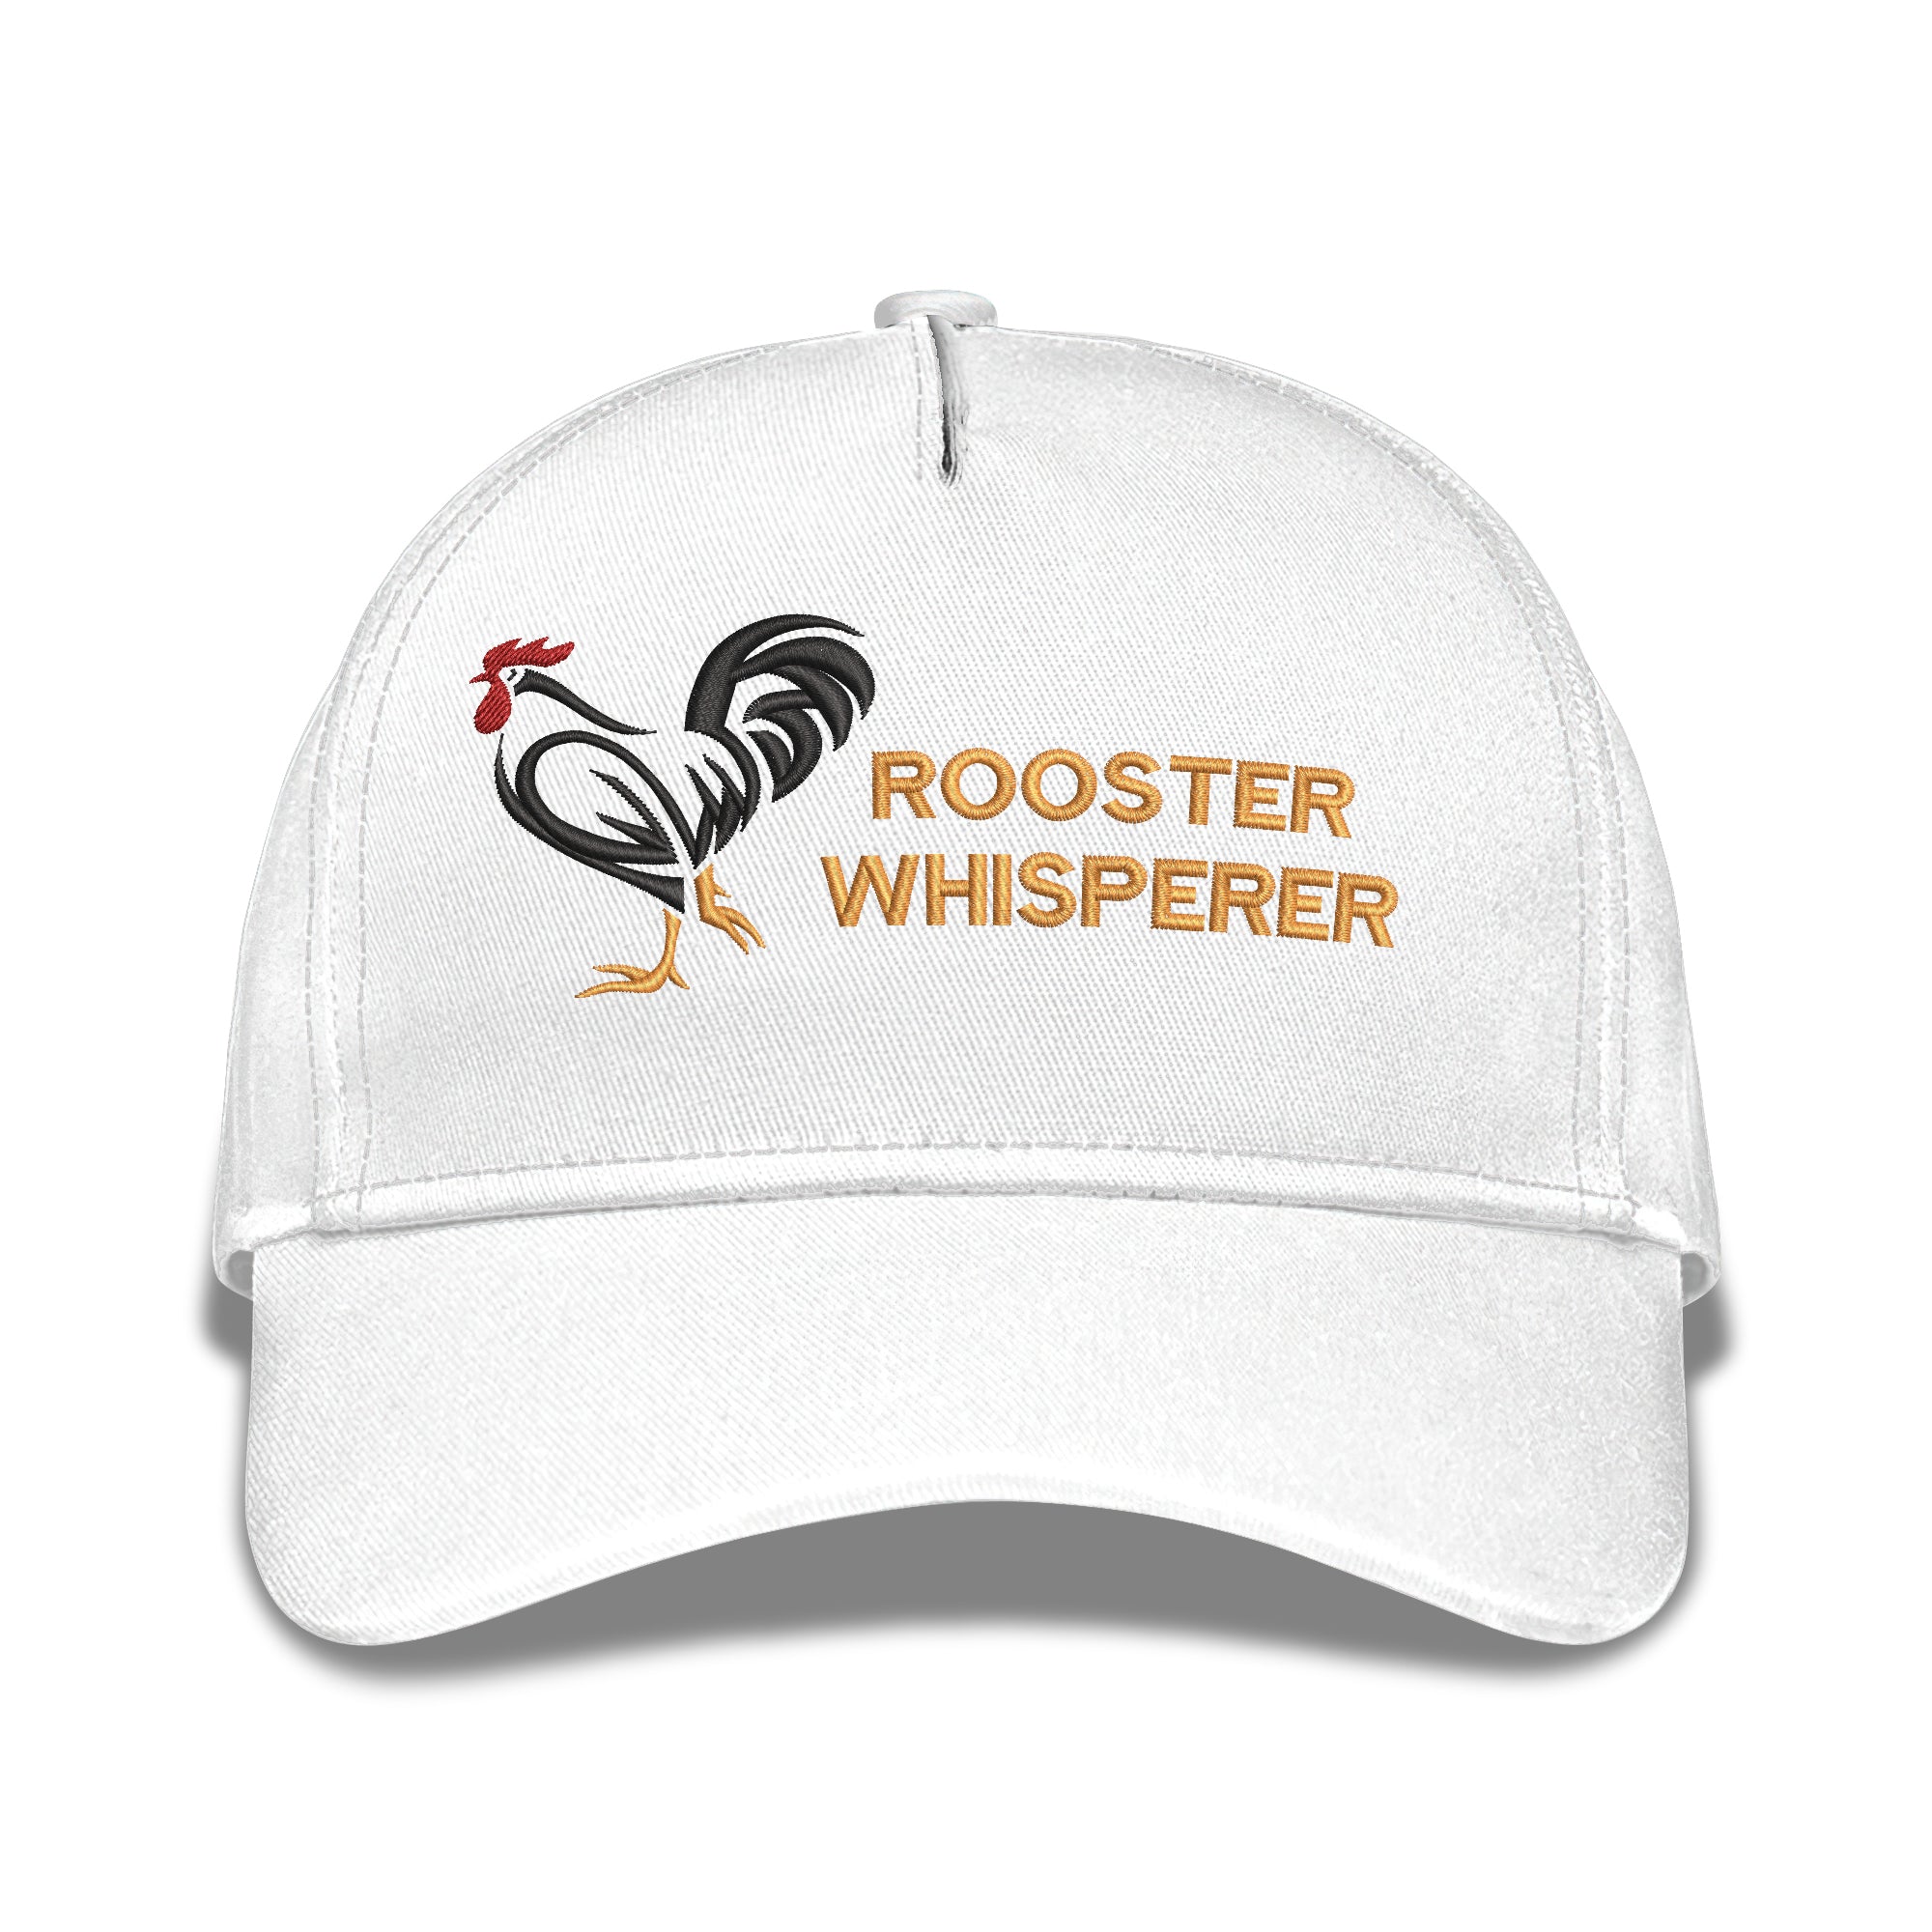 Rooster Whisperer Embroidered Baseball Caps